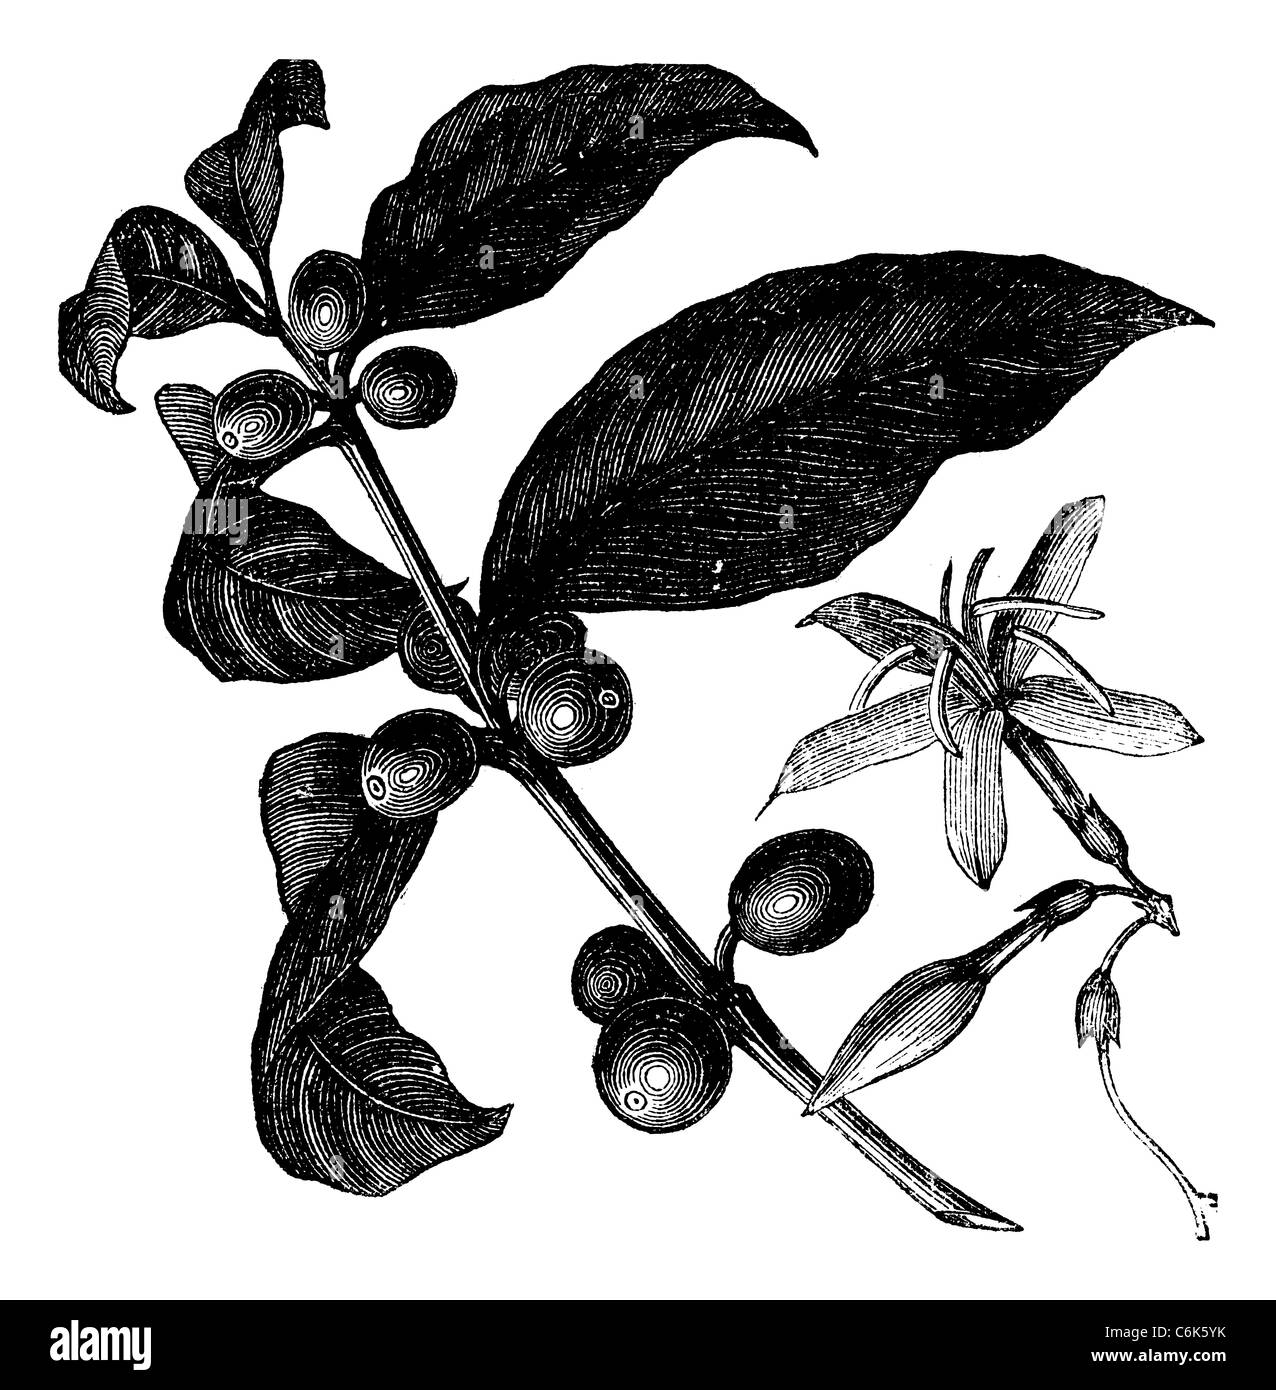 Kaffee-Strauch, Vintage-Gravur. Vintage graviert Abbildung von Kaffee, Samen und Blumen auf dem weißen Hintergrund isoliert. Stockfoto